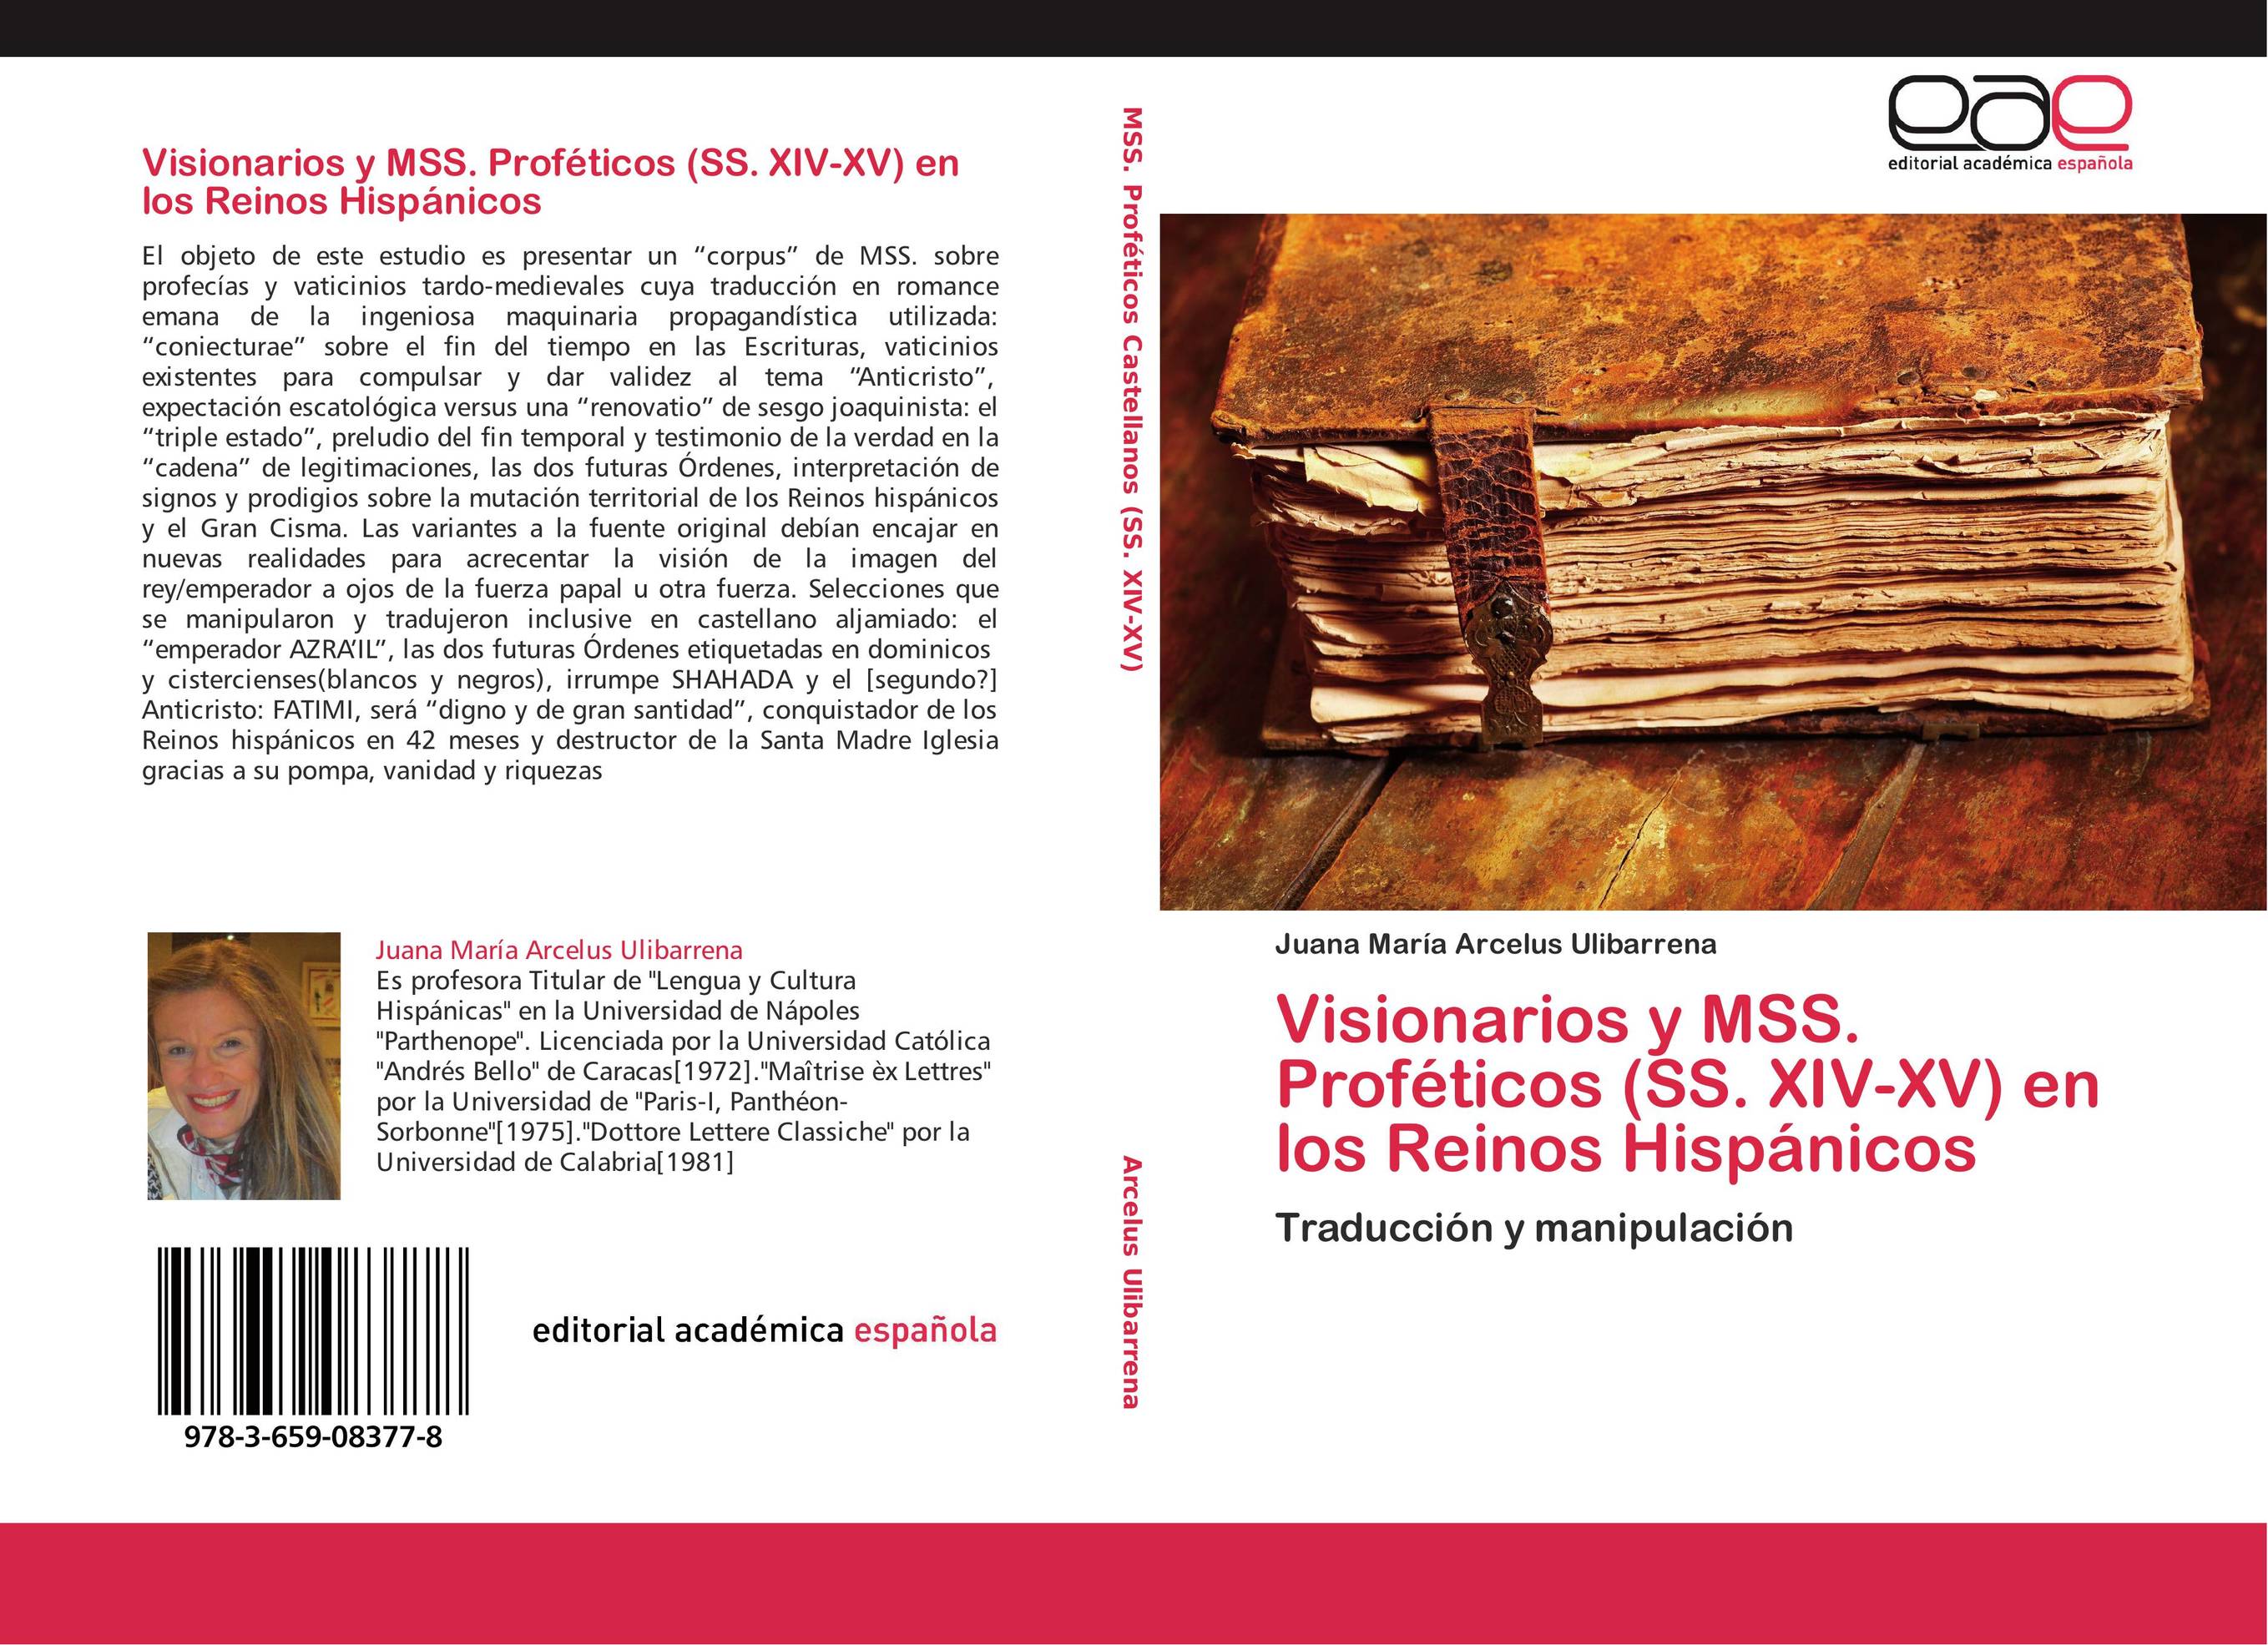 Visionarios y MSS. Proféticos (SS. XIV-XV) en los Reinos Hispánicos